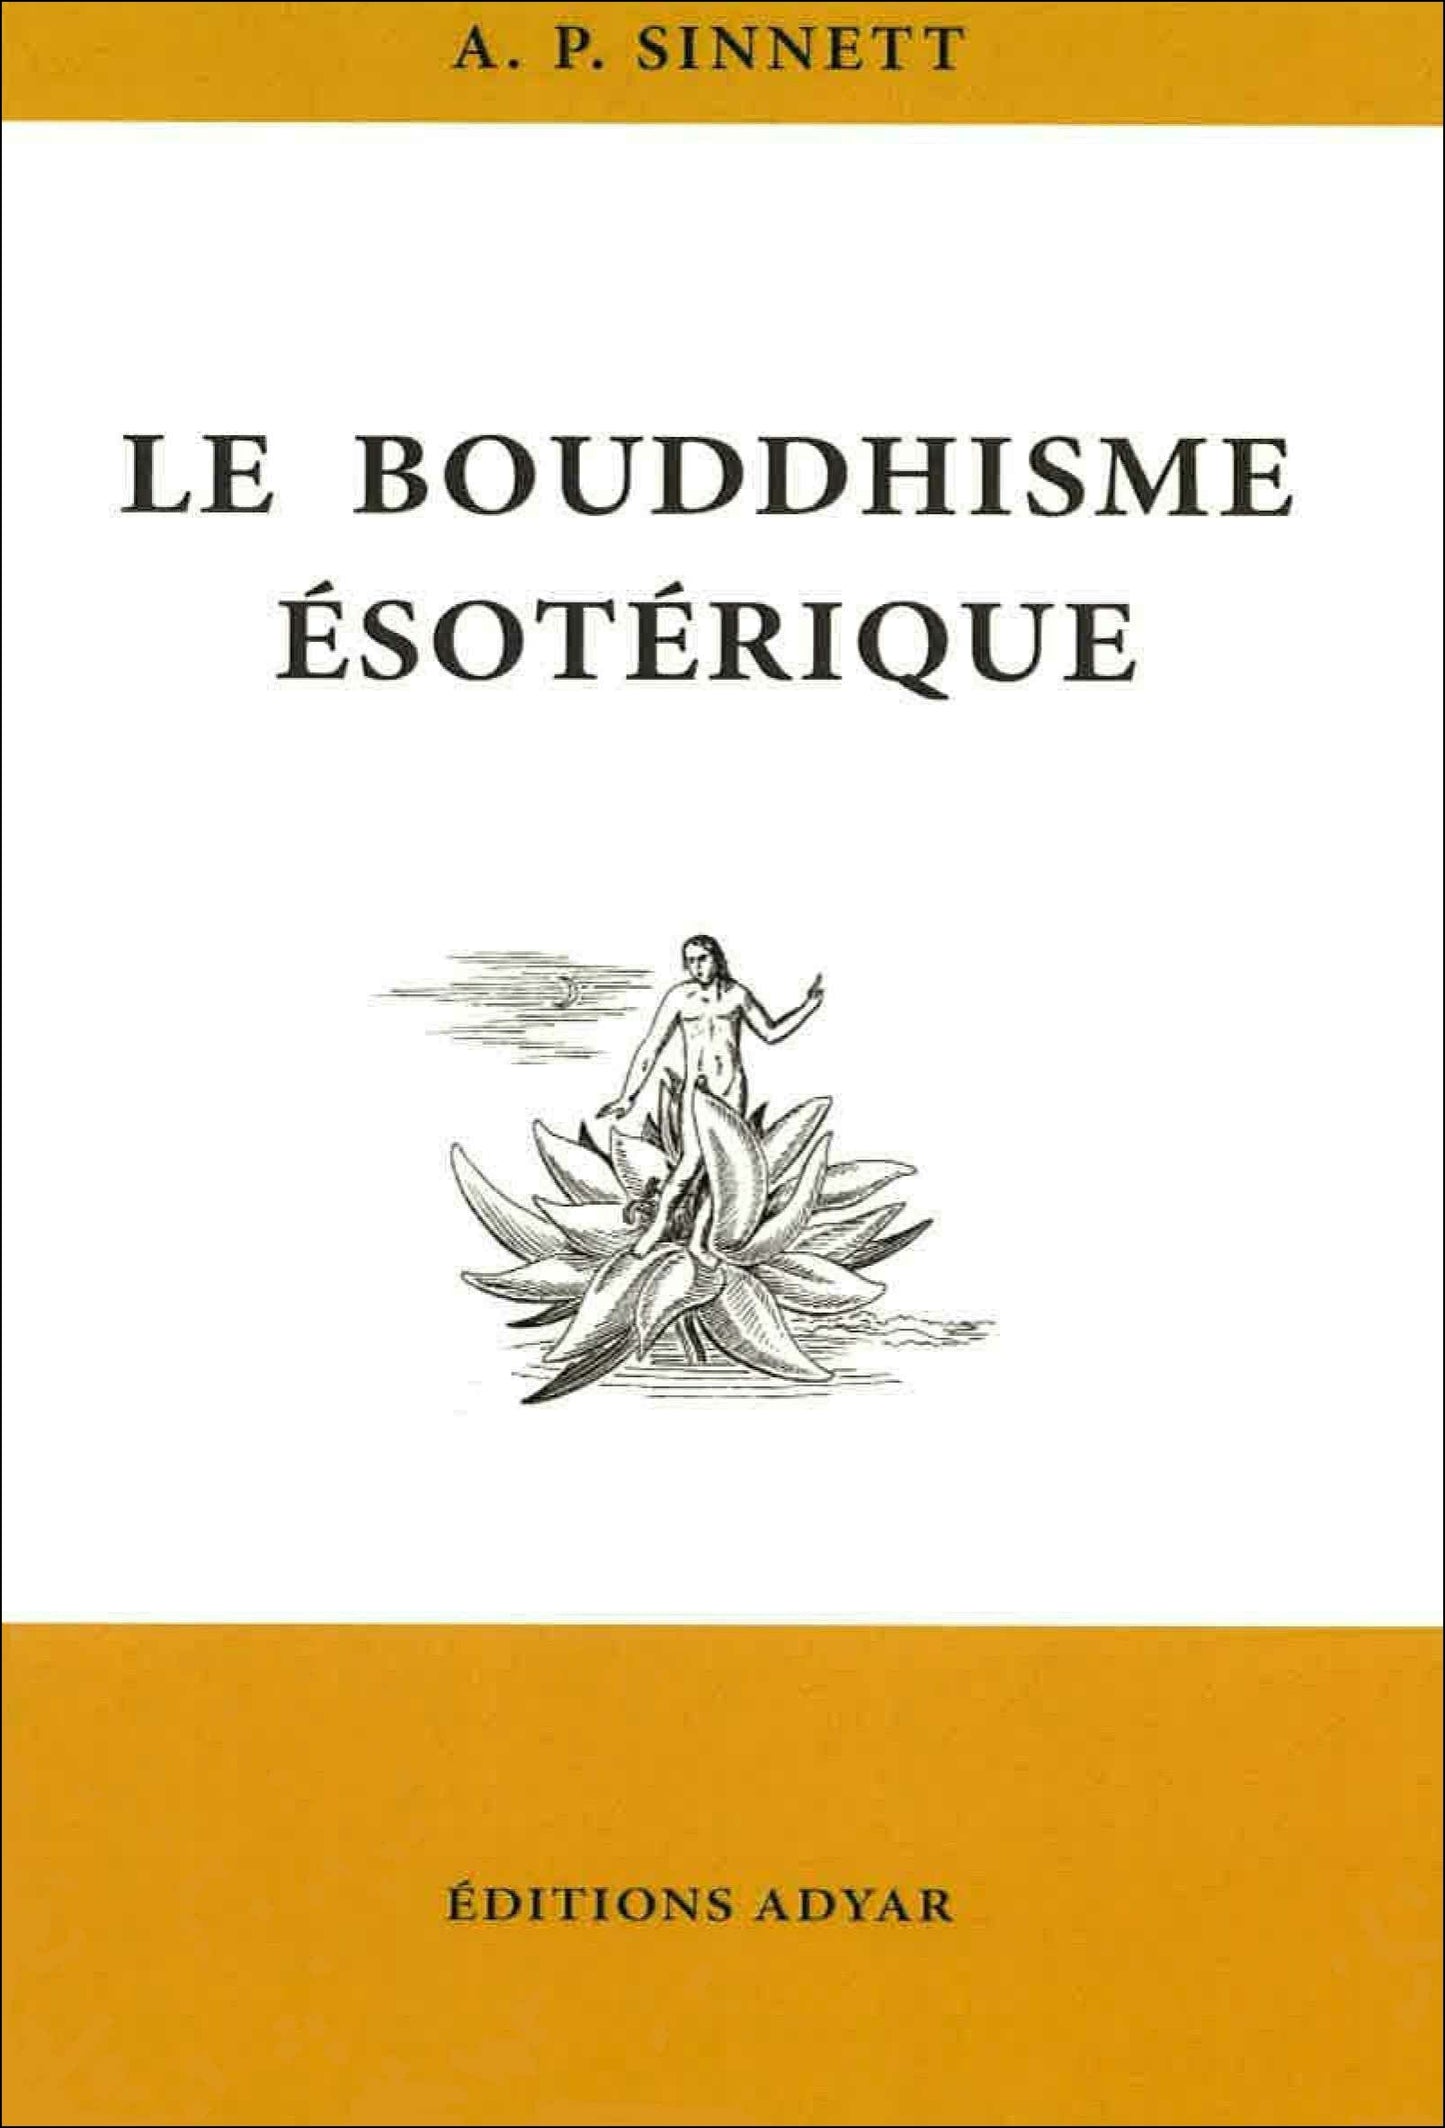 Occasion - Le Bouddhisme ésotérique